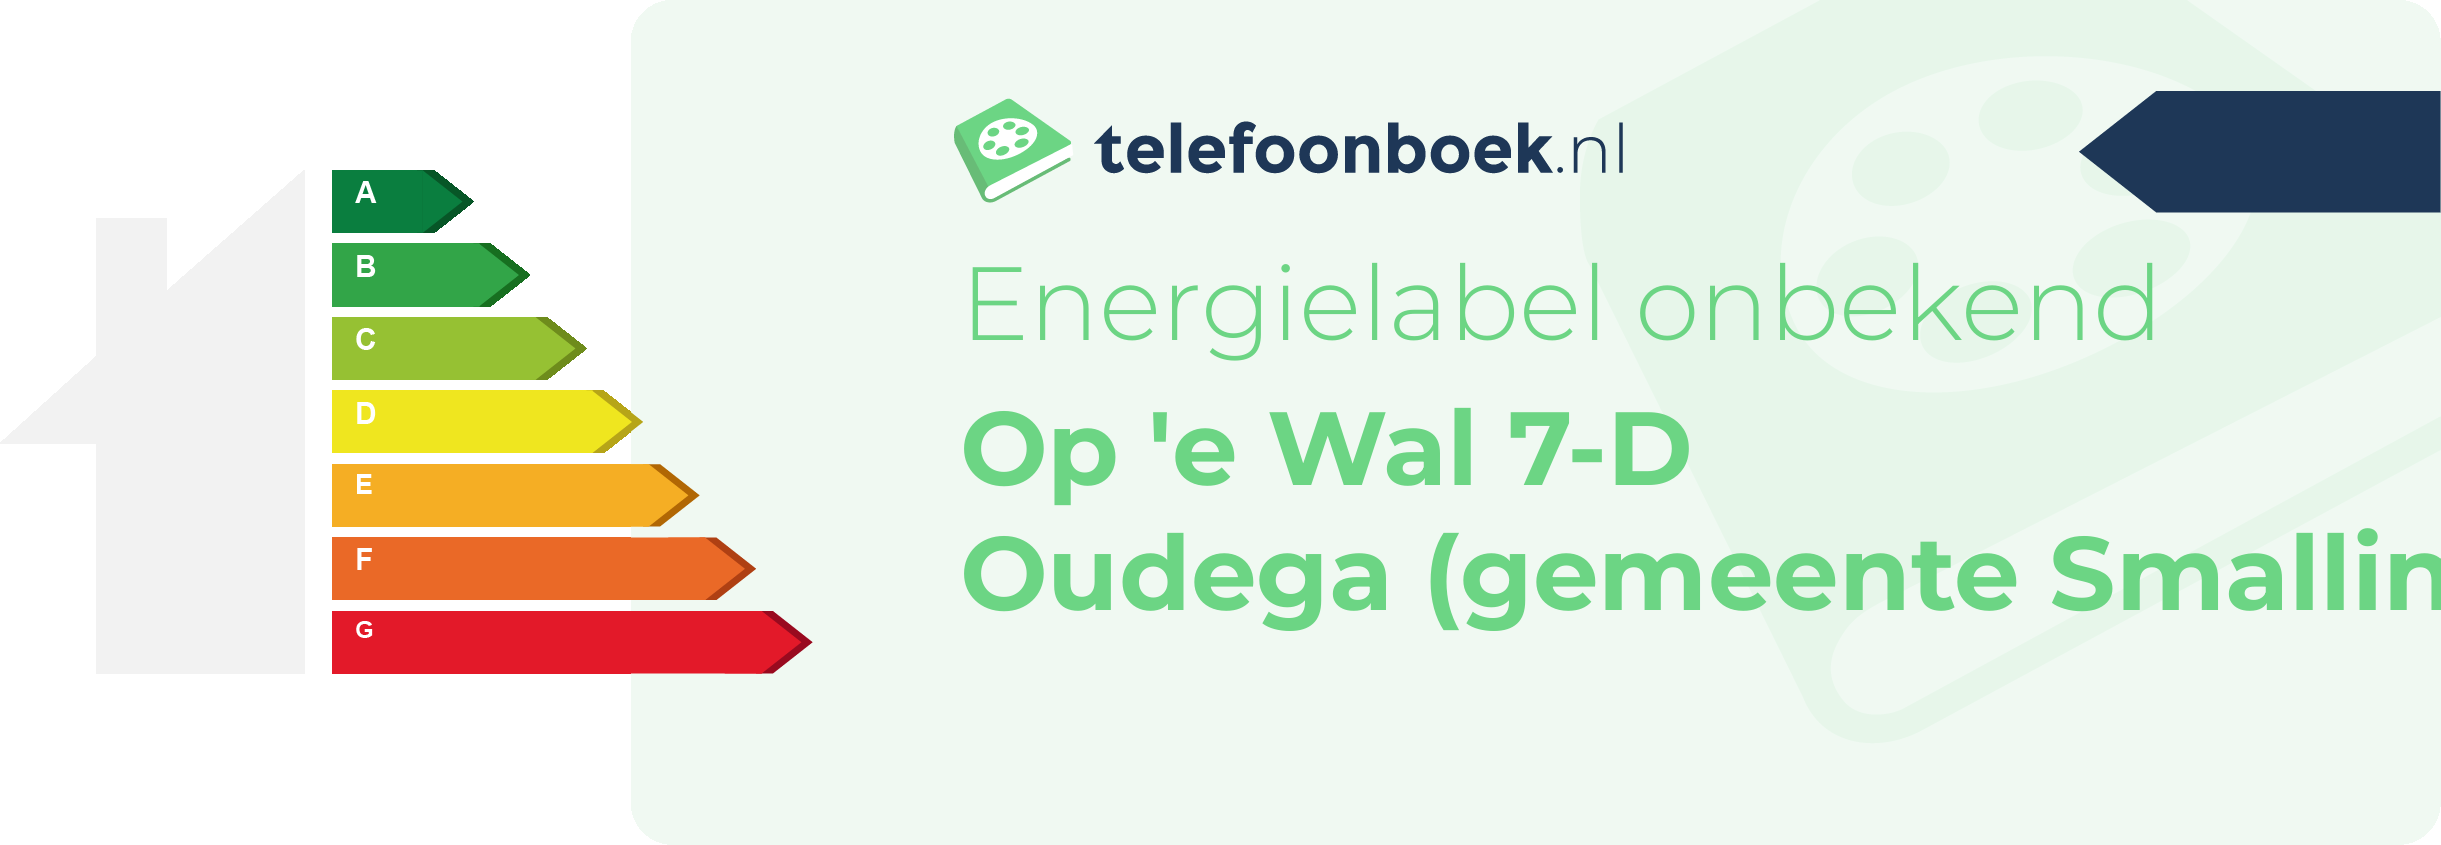 Energielabel Op 'e Wal 7-D Oudega (gemeente Smallingerland Friesland)